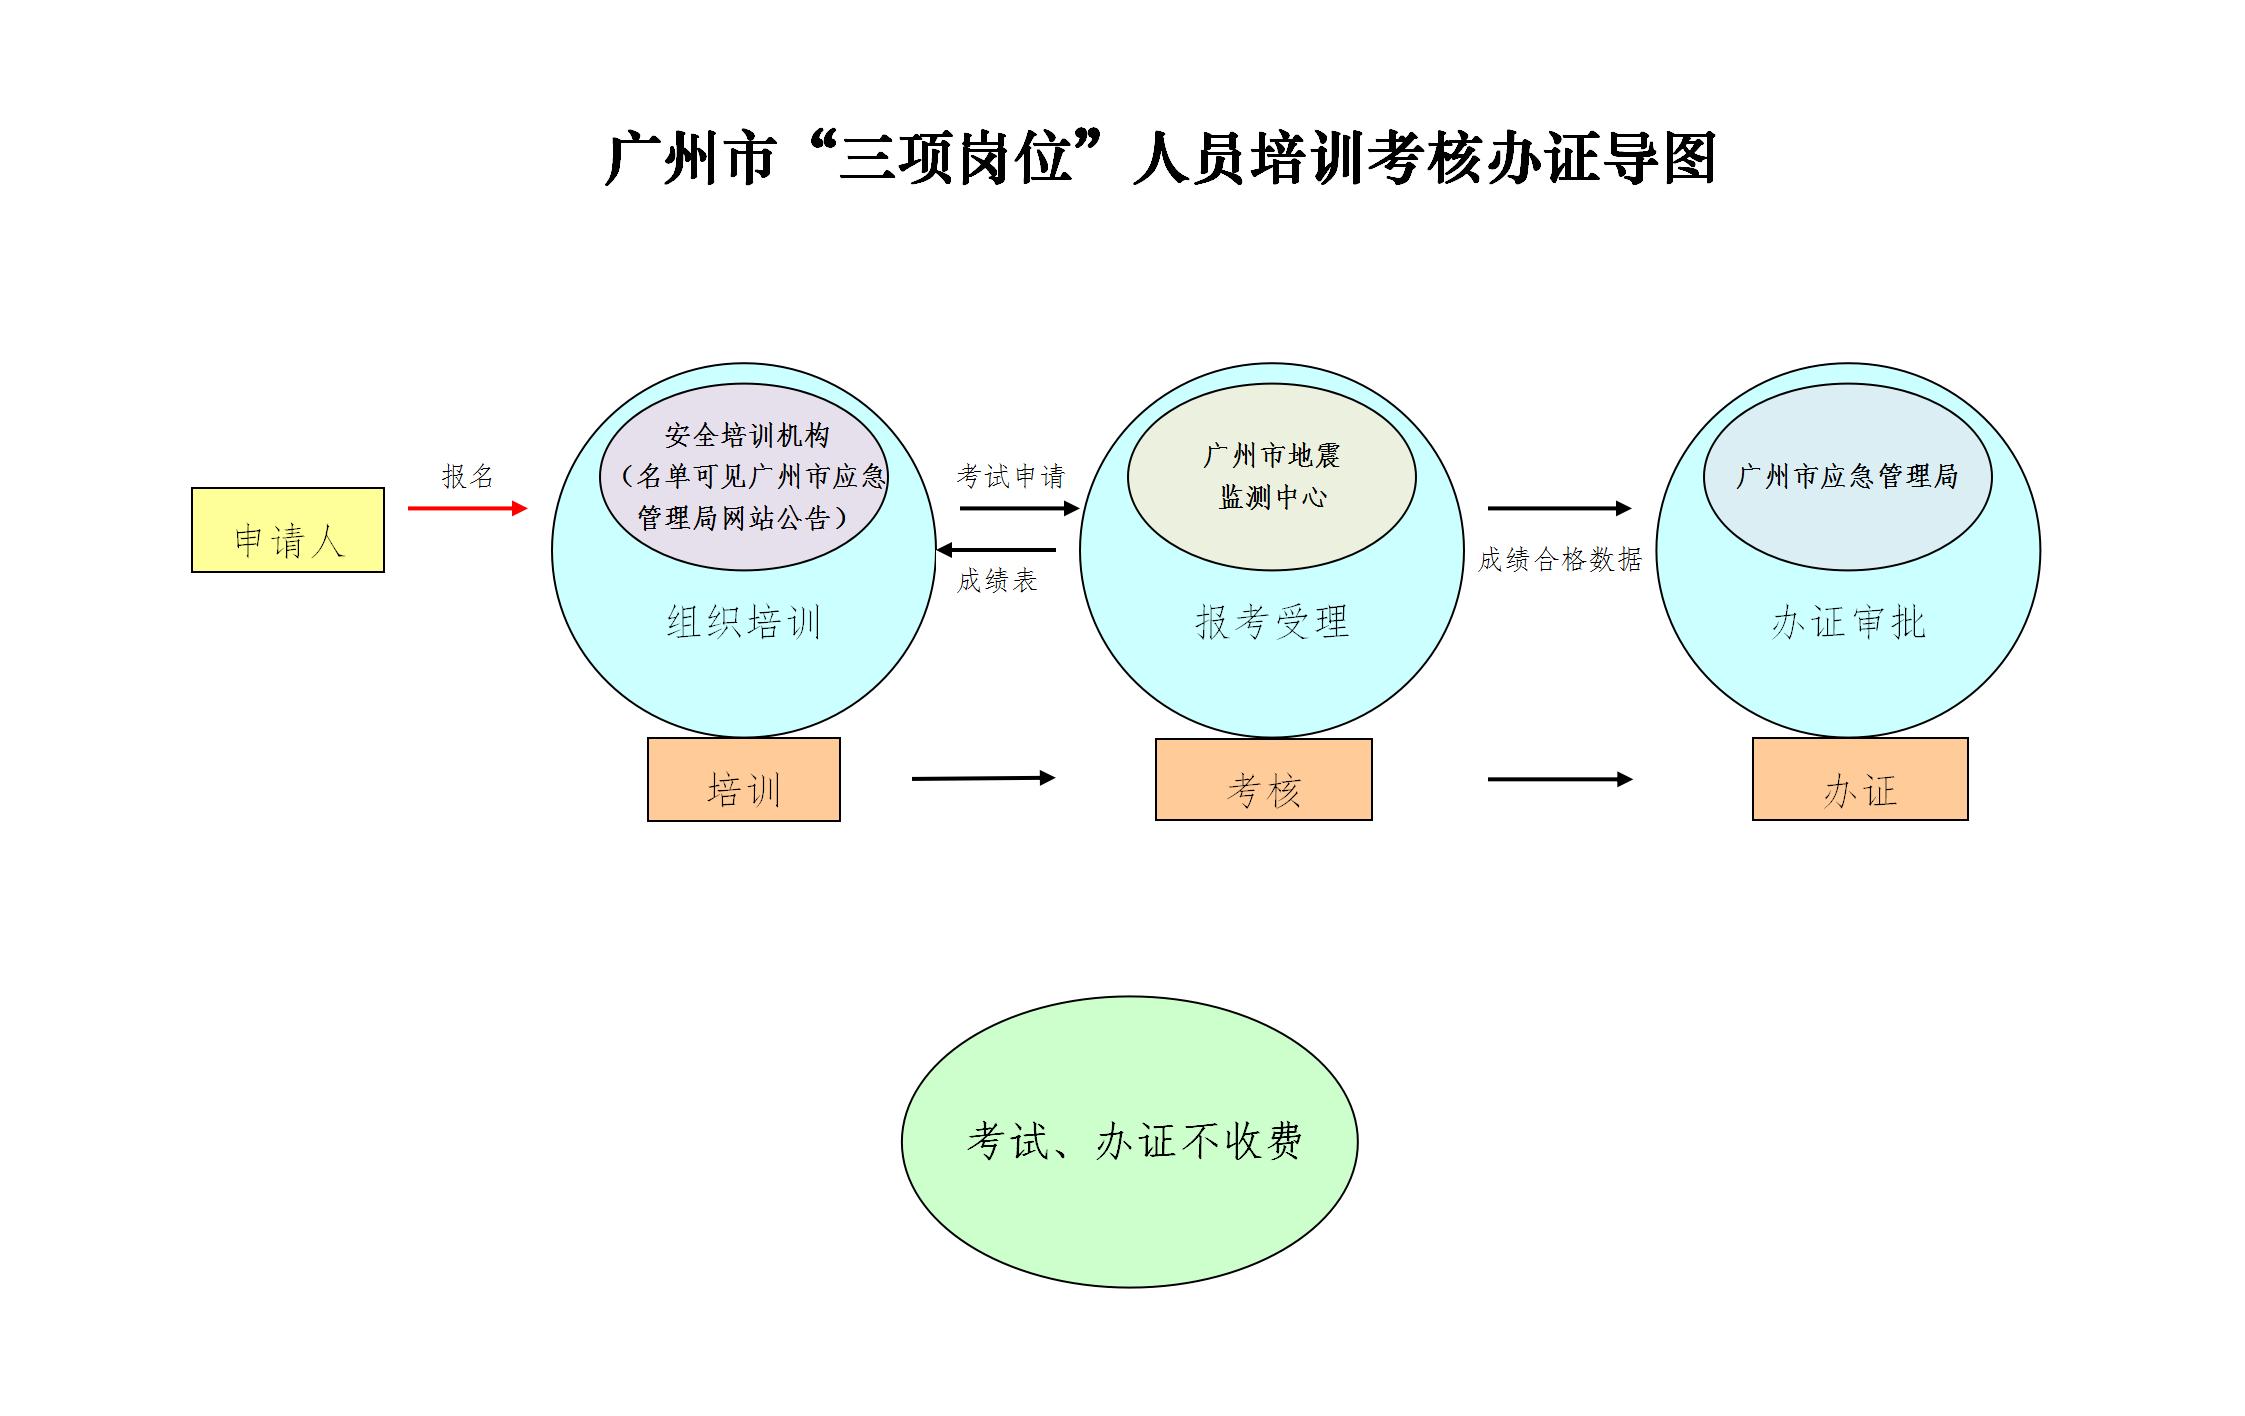 广州市“三项岗位”人员培训考核办证导图_01.jpg